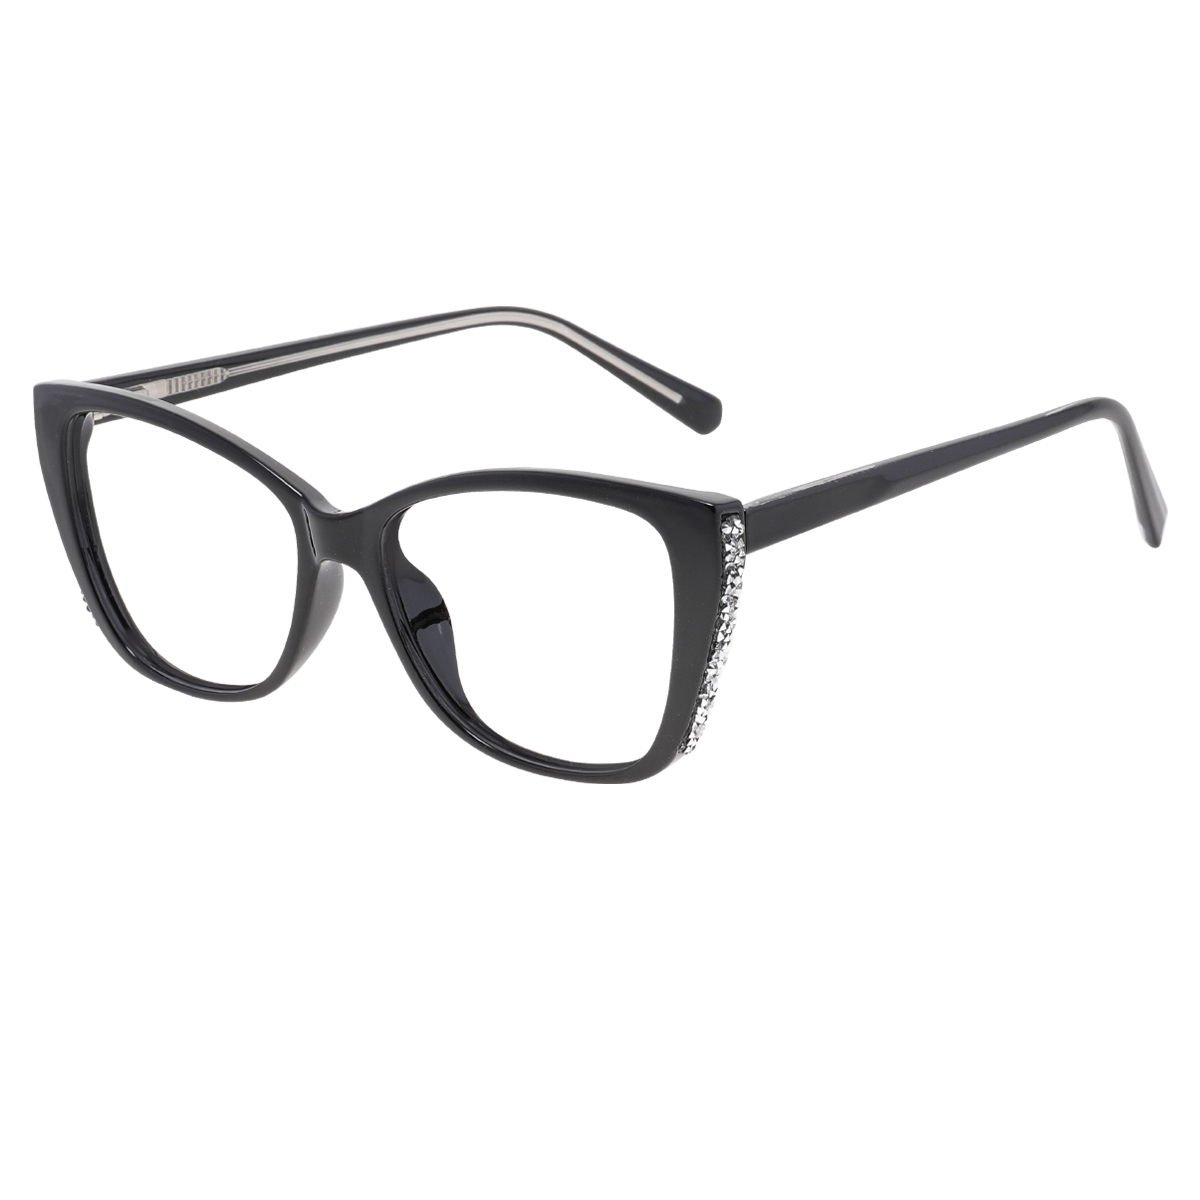 Cathie - Square Black Reading Glasses for Women